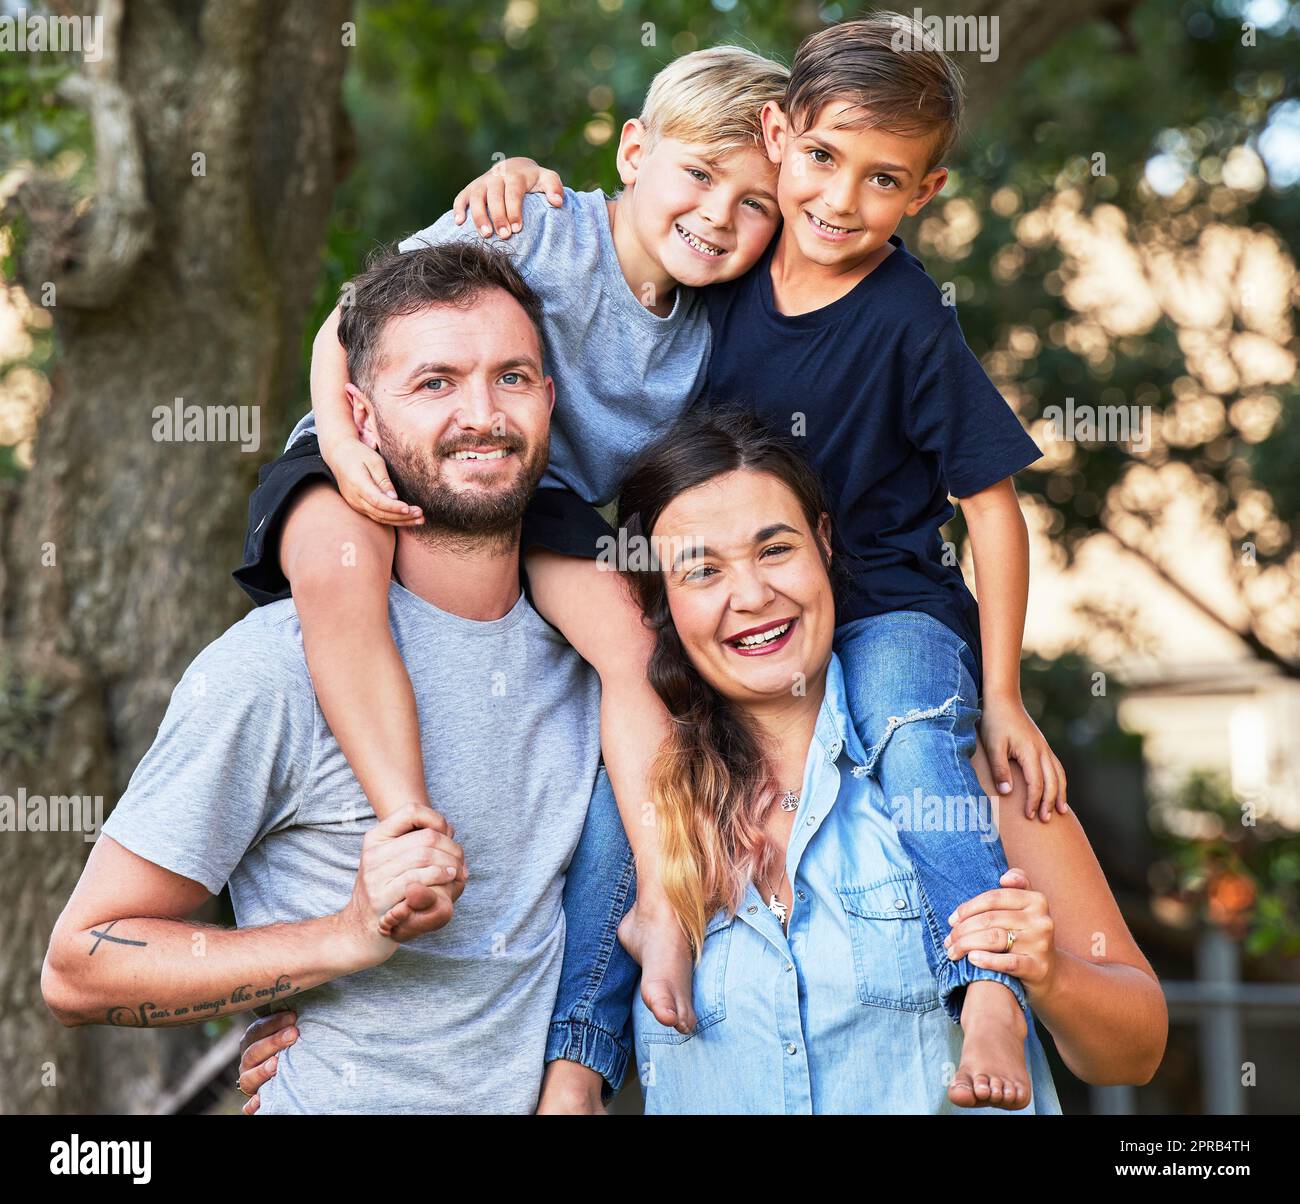 Kind, das mit Sicherheit lebt, lernt, Glauben zu haben. Porträt einer schönen Familie mit ihren Söhnen auf den Schultern in einem Park. Stockfoto